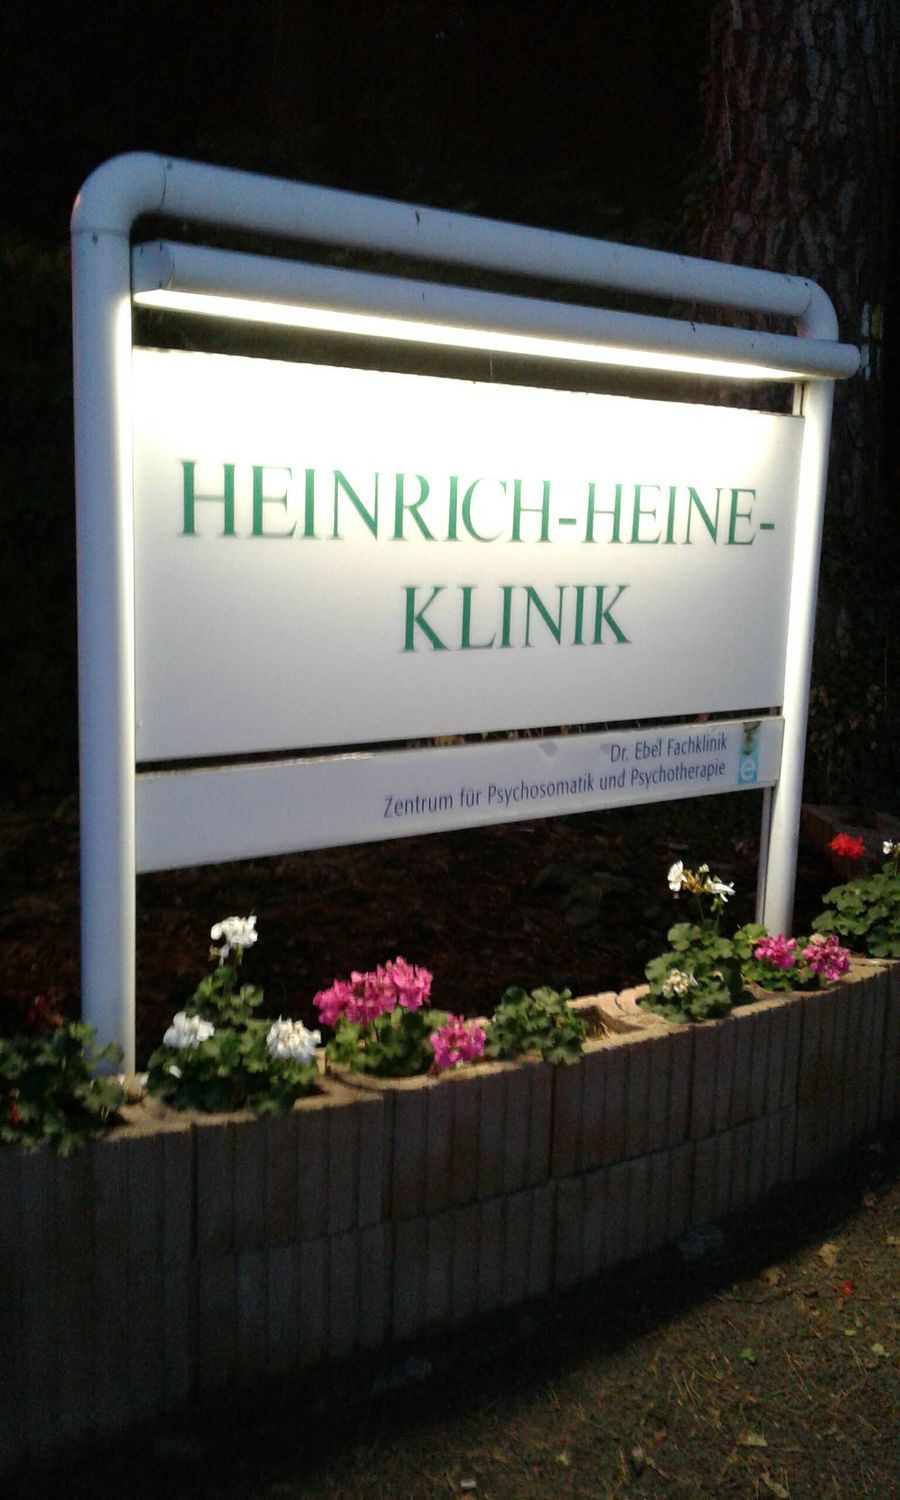 Dr. Ebel Fachkliniken GmbH & Co. Heinrich-Heine-Klinik KG Fachklinik für  Psychotherapie - 2 Bewertungen - Potsdam Neu Fahrland - Am Stinthorn |  golocal